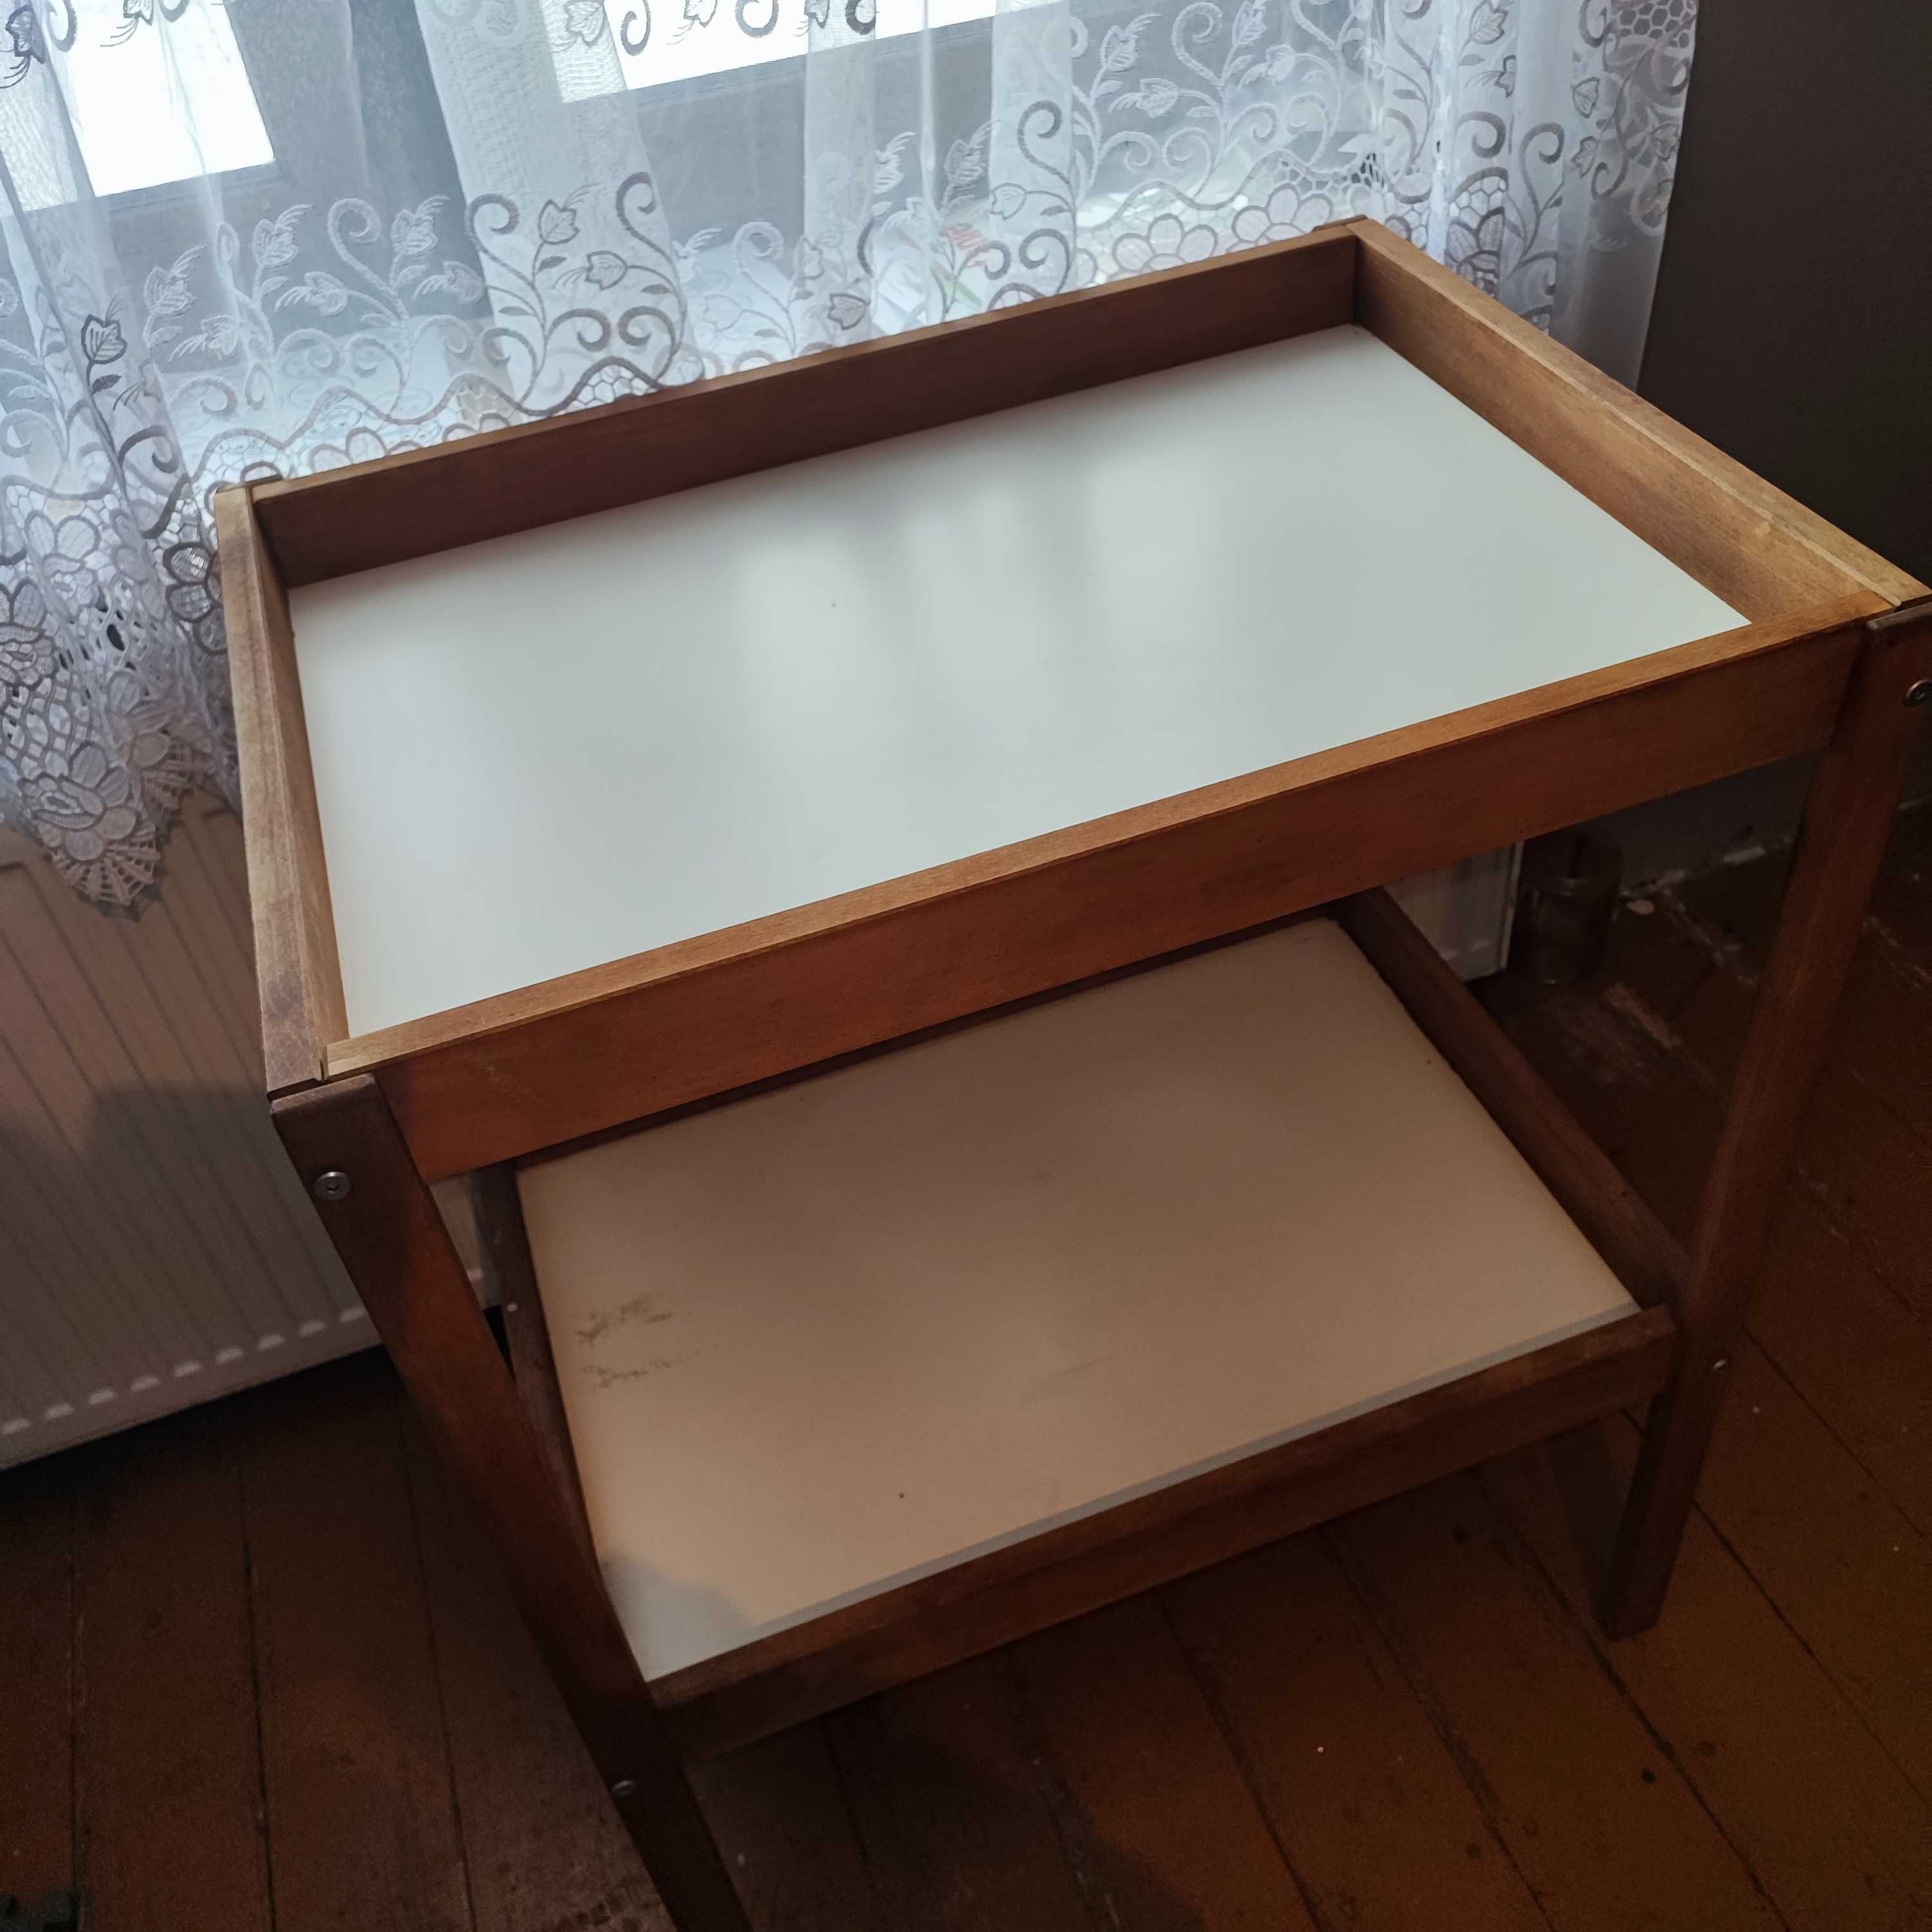 SNIGLAR
Stół do przewijania, przewijak IKEA